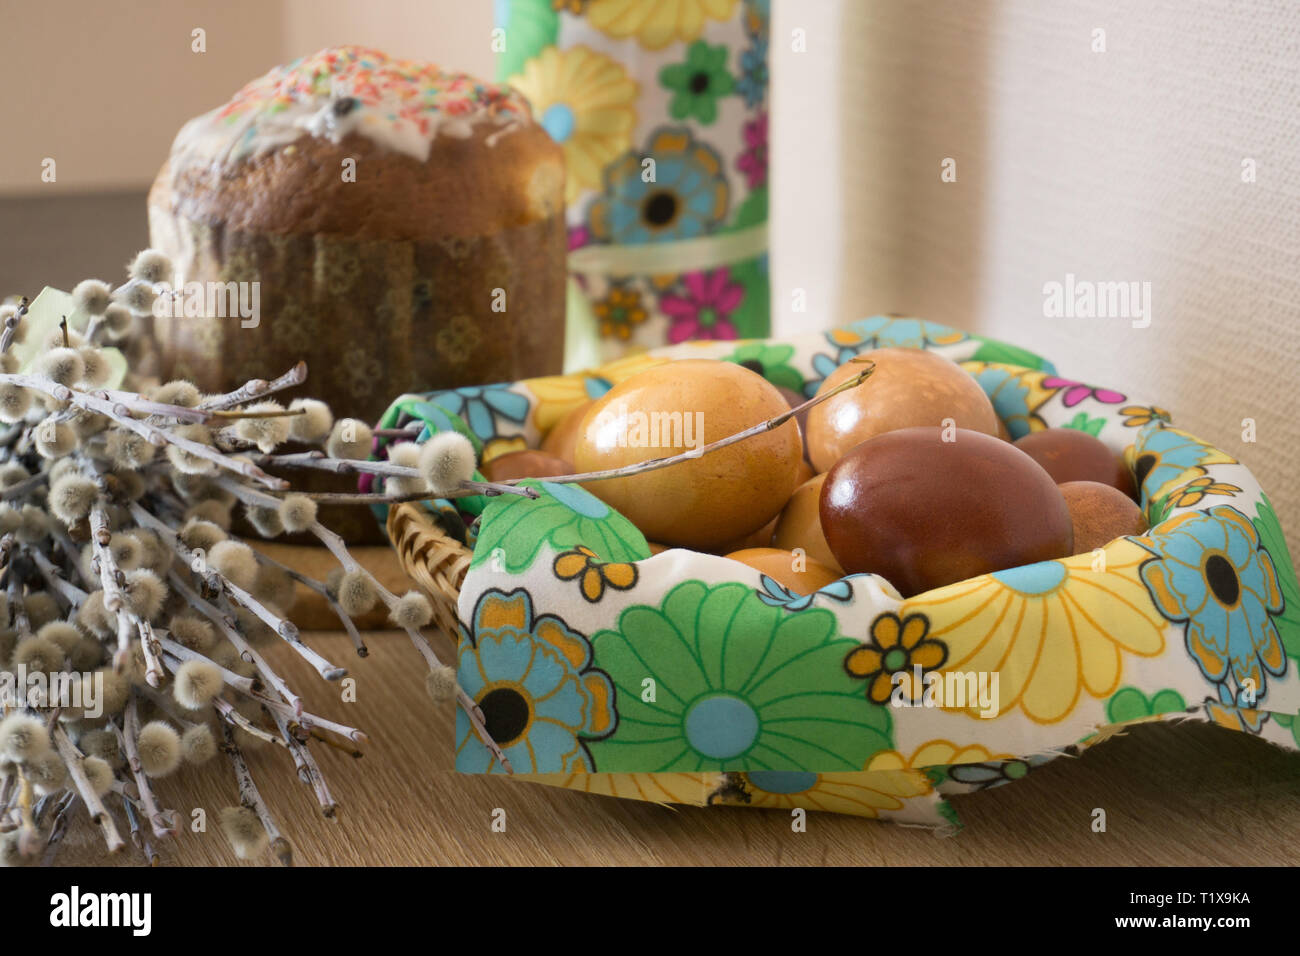 Tabelle vor Ostern mit Ostern Kuchen-, Weide- und Eier mit Zwiebeln schälen  lackiert eingerichtet Stockfotografie - Alamy